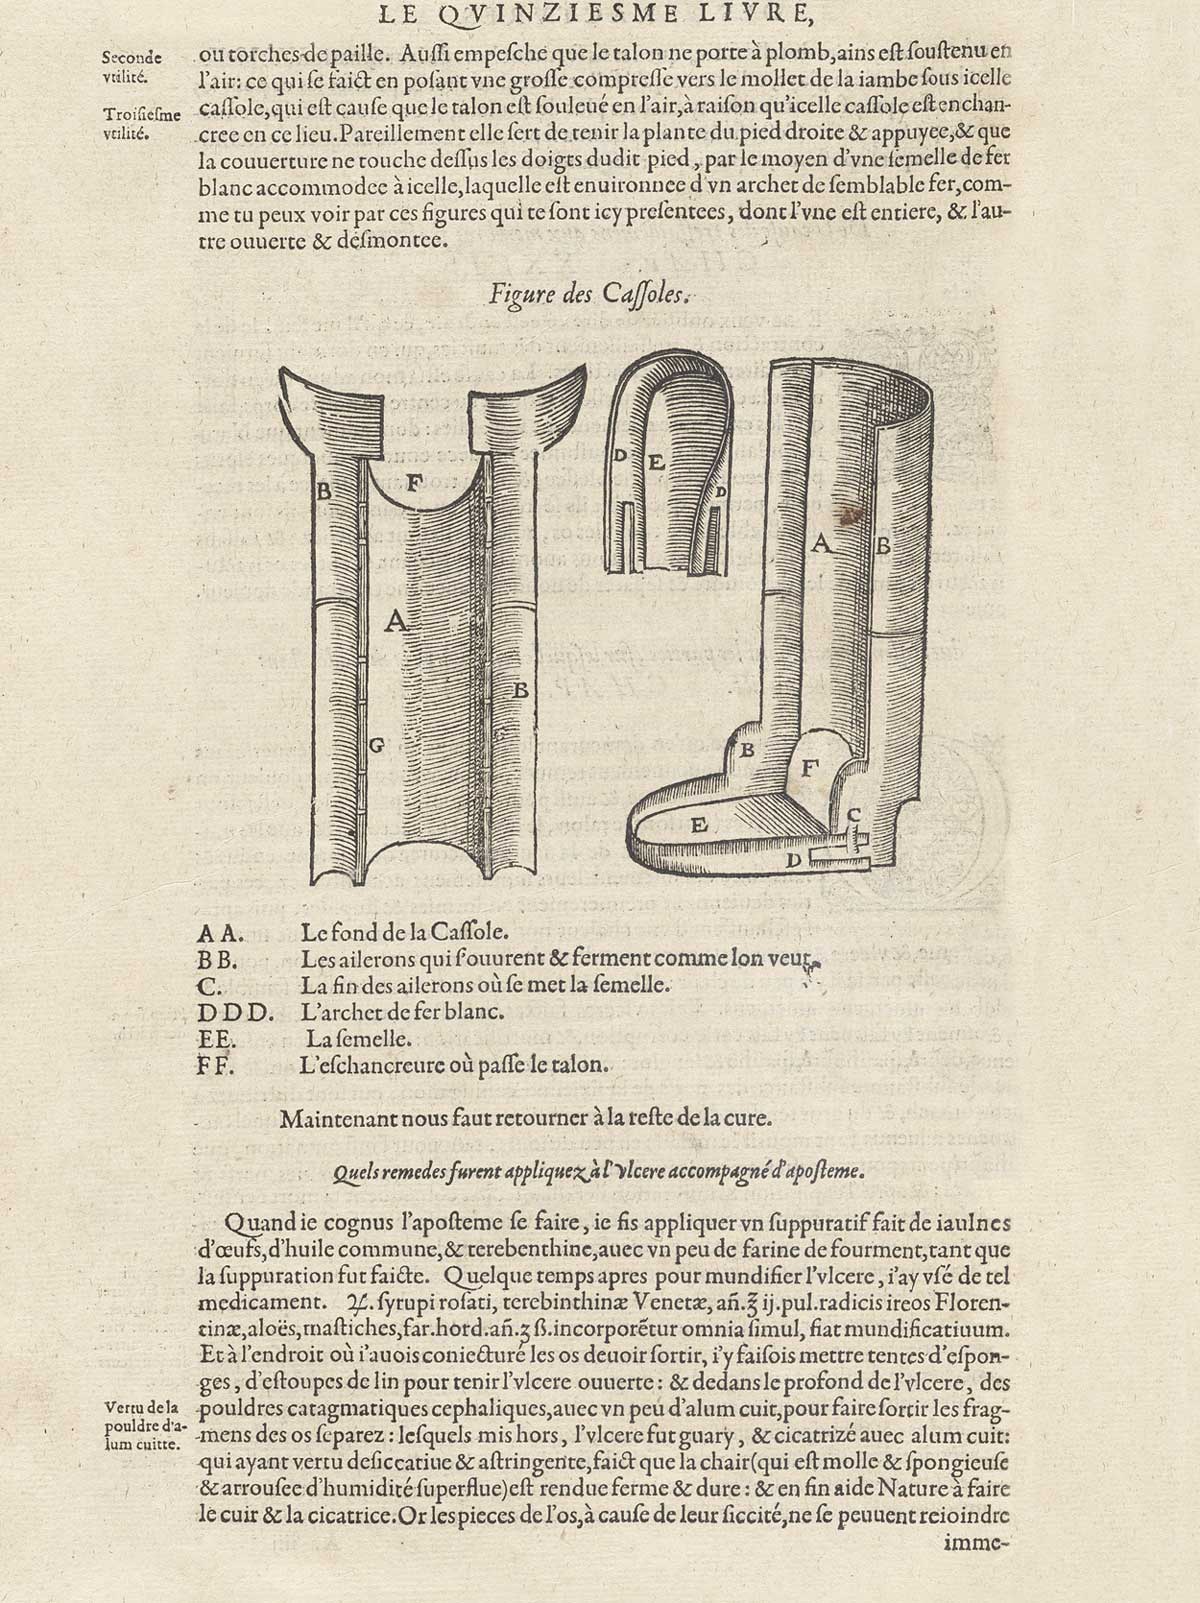 Page VCLIIII which features a metal leg cast (Figure des Cassoles) with descriptive text.